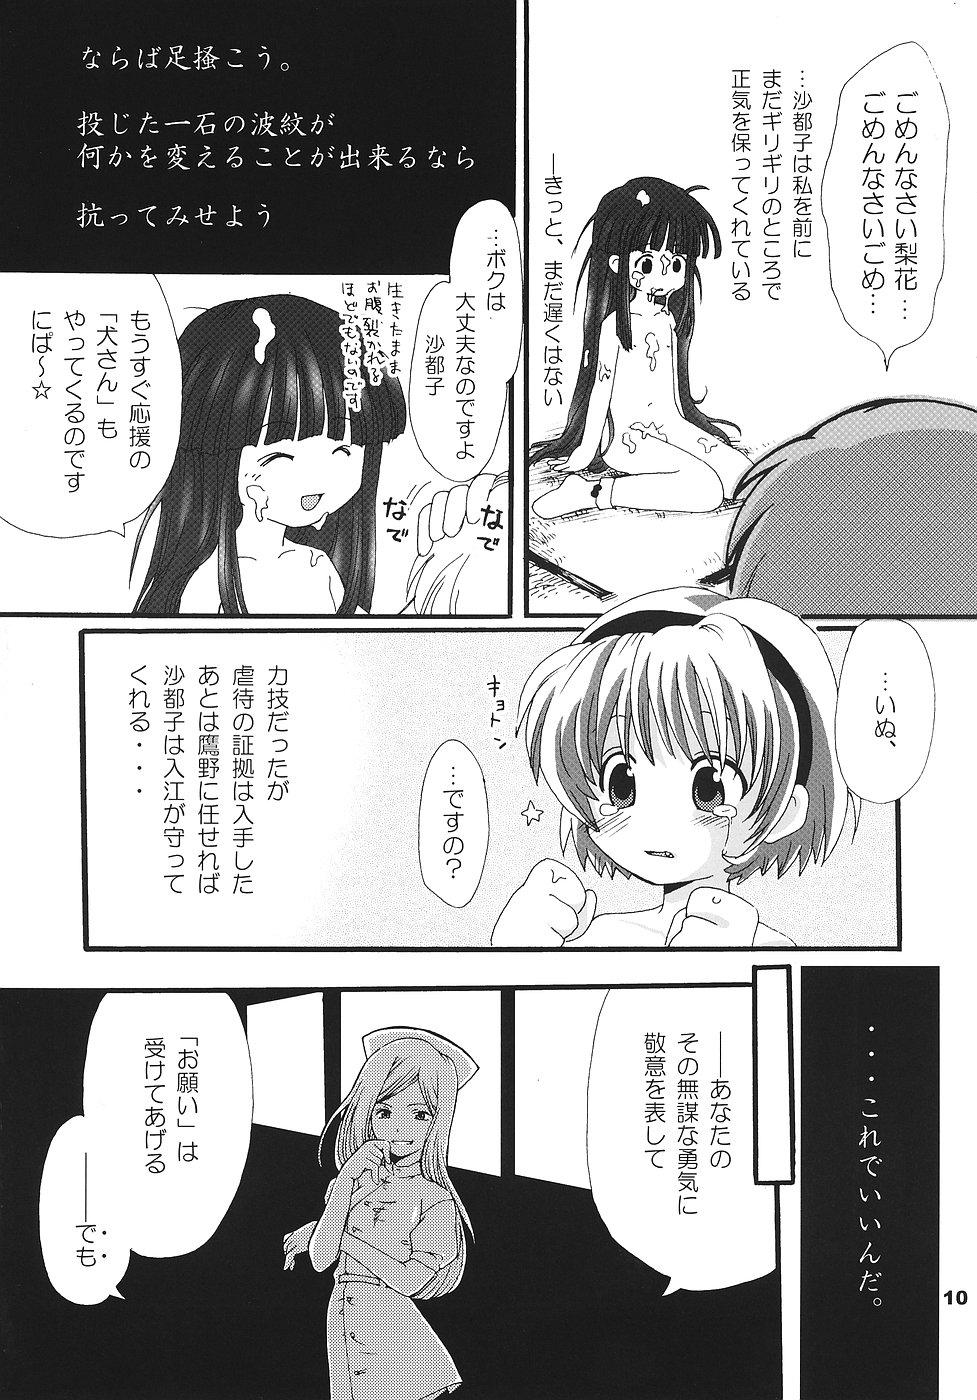 Spandex Higurashi no Koe, Ima wa Tae - Higurashi no naku koro ni Nice Ass - Page 9